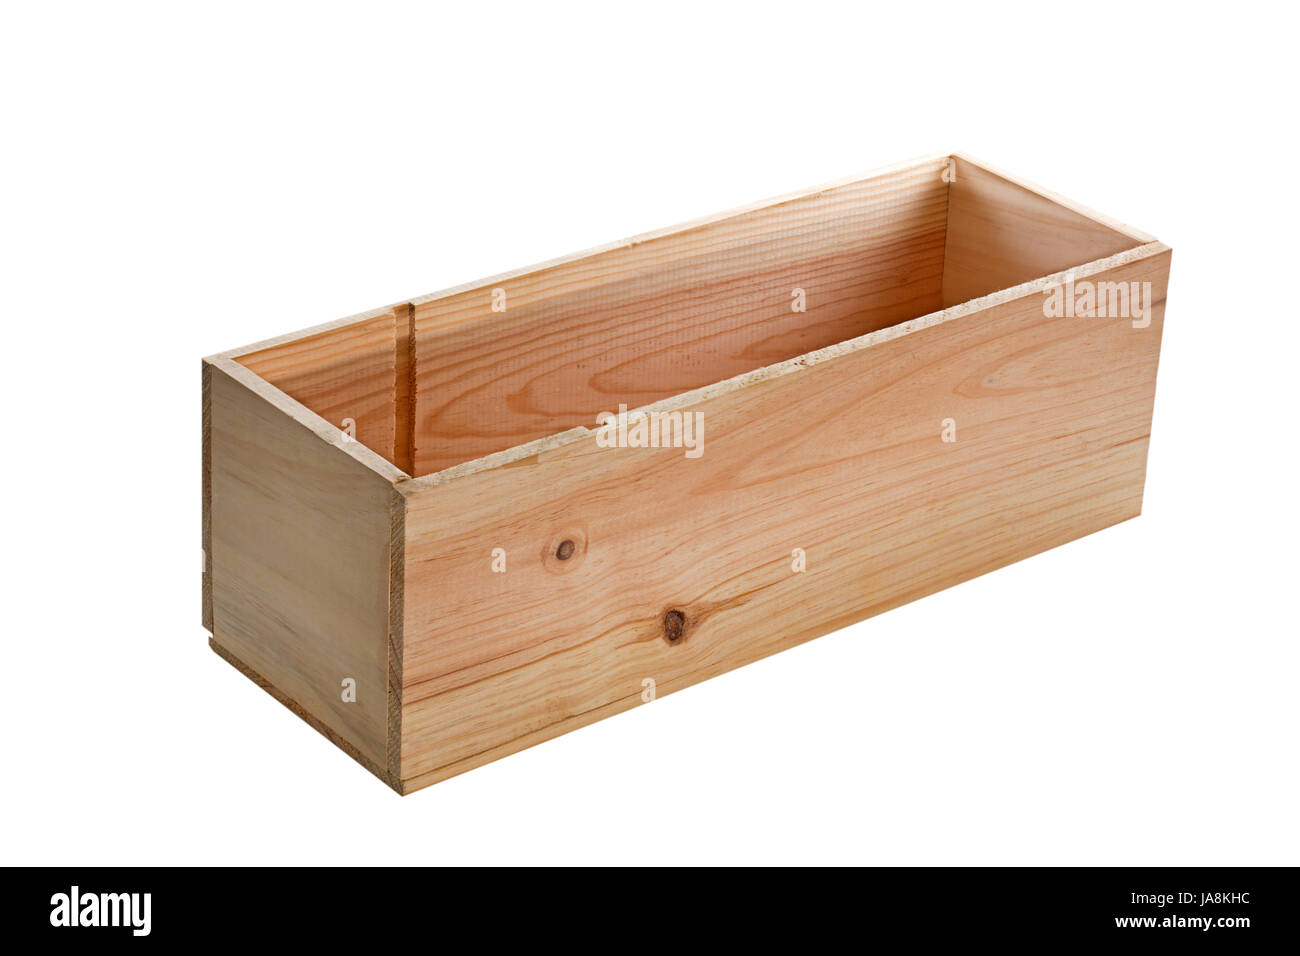 Caja de madera rectangular con frontal redondeado y cierre